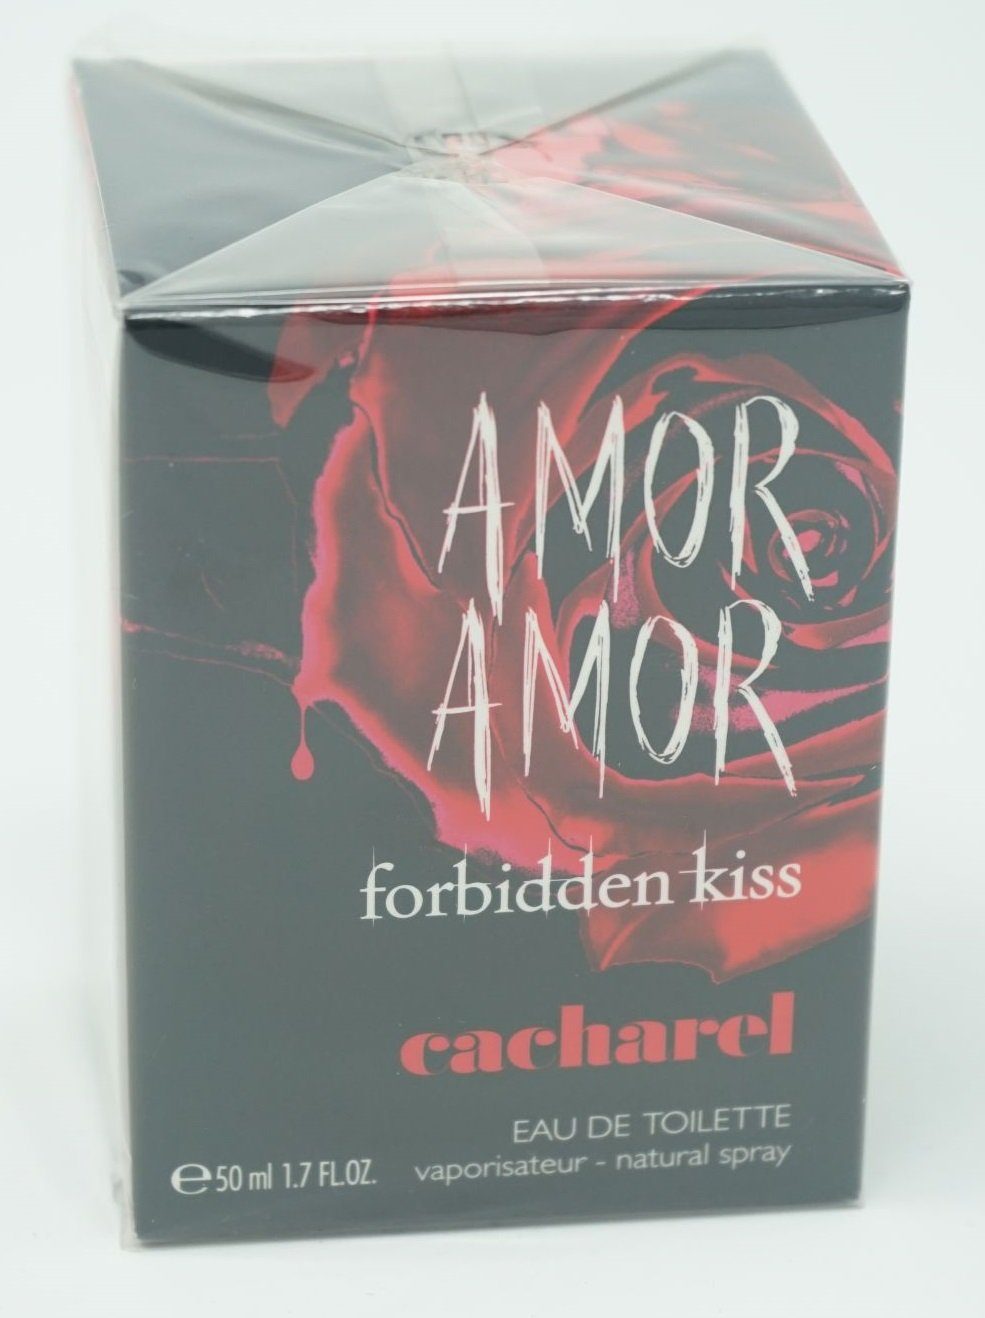 CACHAREL Eau de Toilette Cacharel Amor Amor Forbidden Kiss Eau de Toilette Spray 50 ml